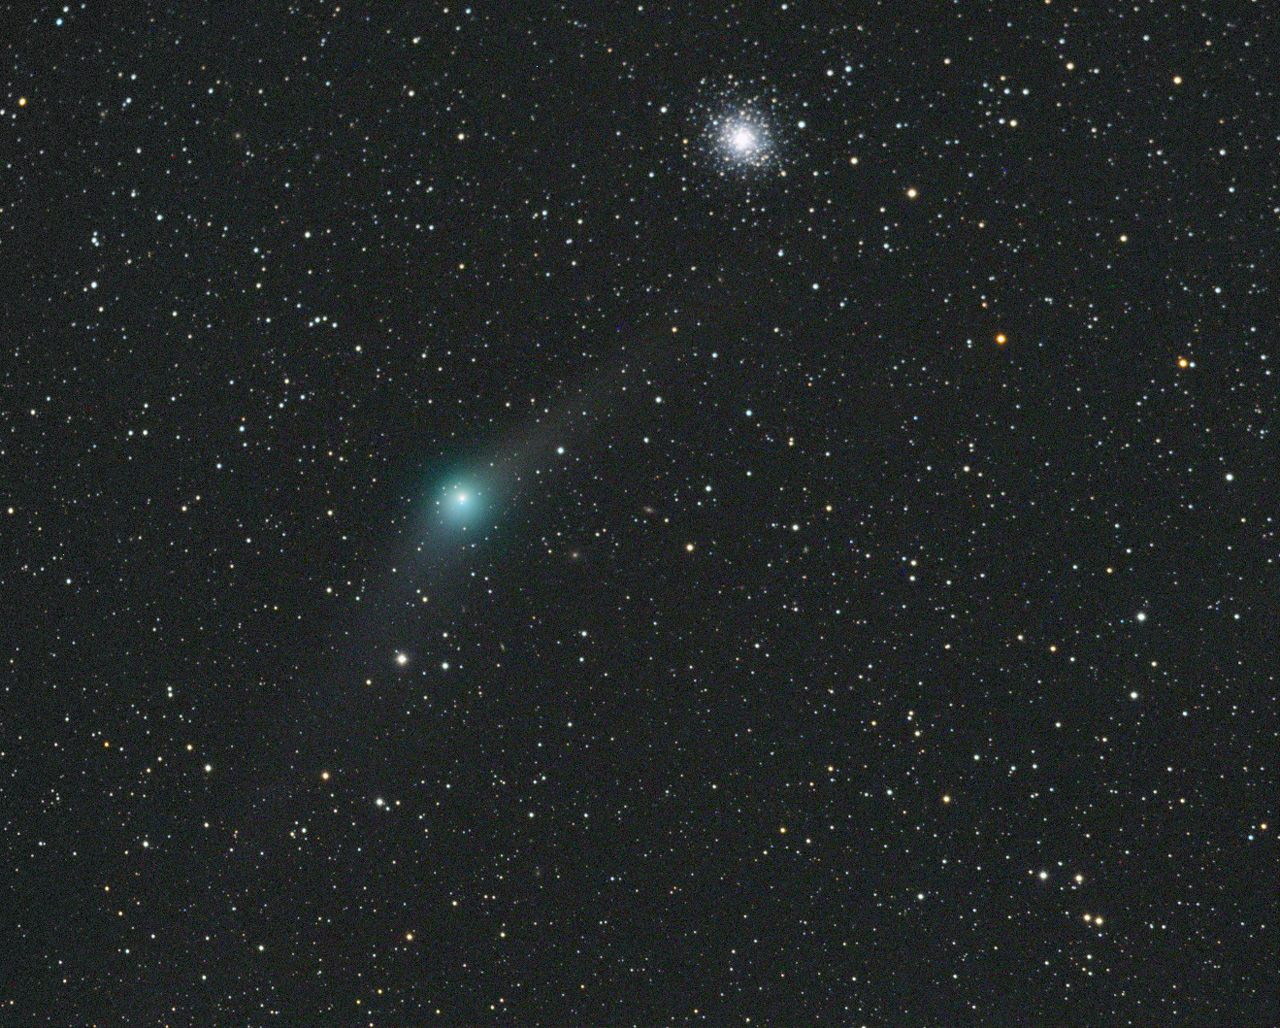 Komet C2009 P1 Garradd bei M92 M 92